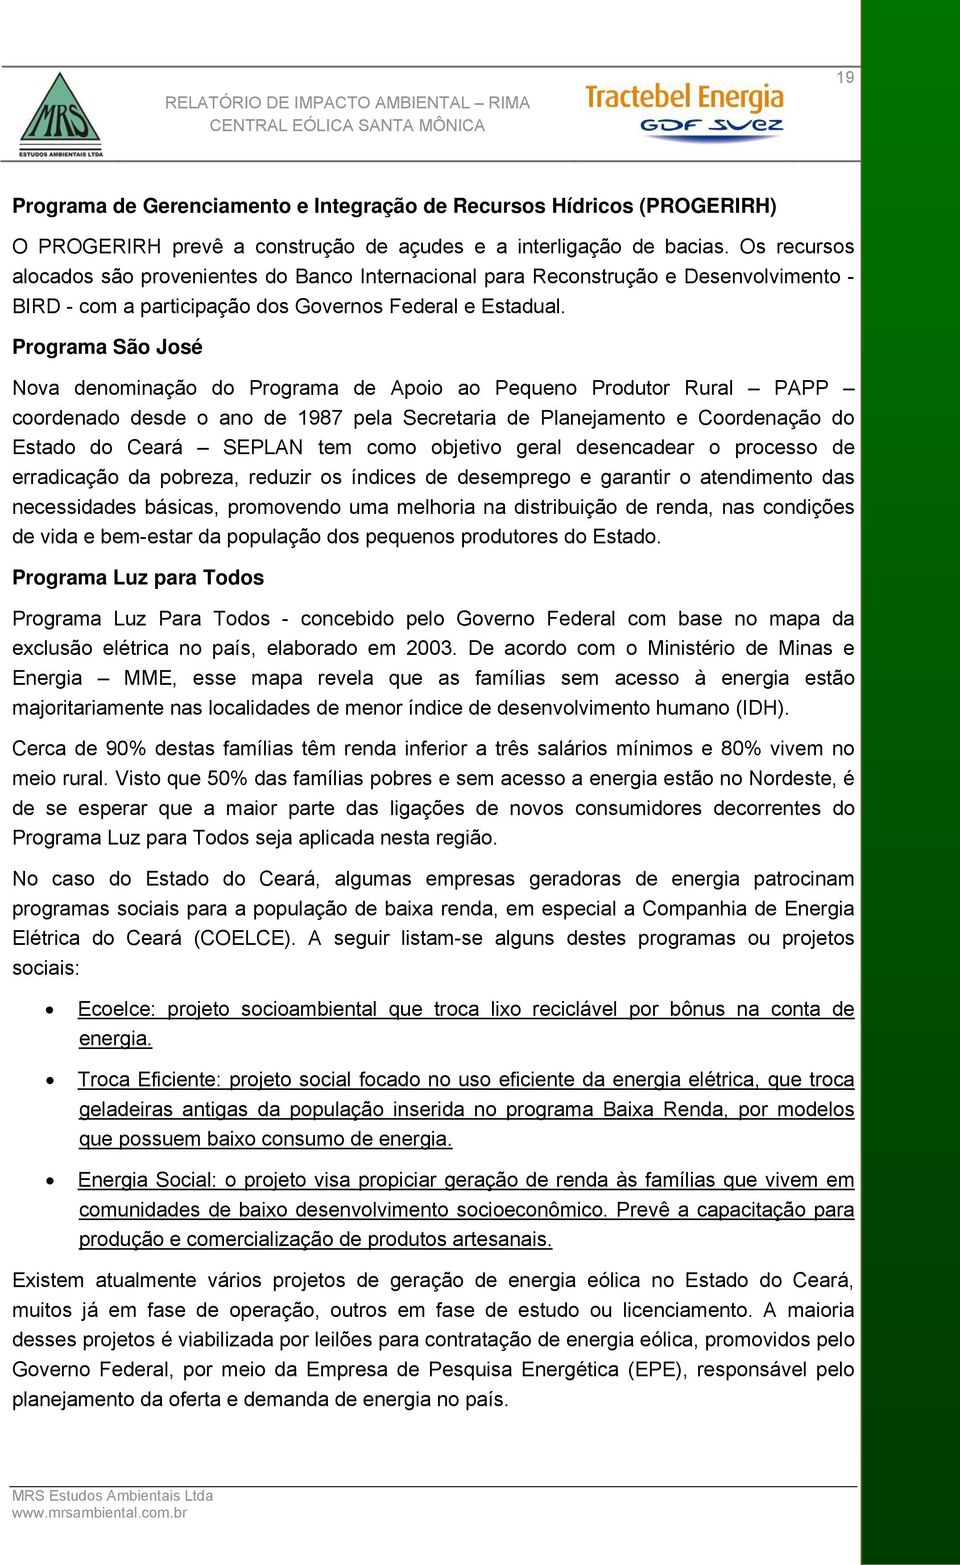 Programa São José Nova denominação do Programa de Apoio ao Pequeno Produtor Rural PAPP coordenado desde o ano de 1987 pela Secretaria de Planejamento e Coordenação do Estado do Ceará SEPLAN tem como